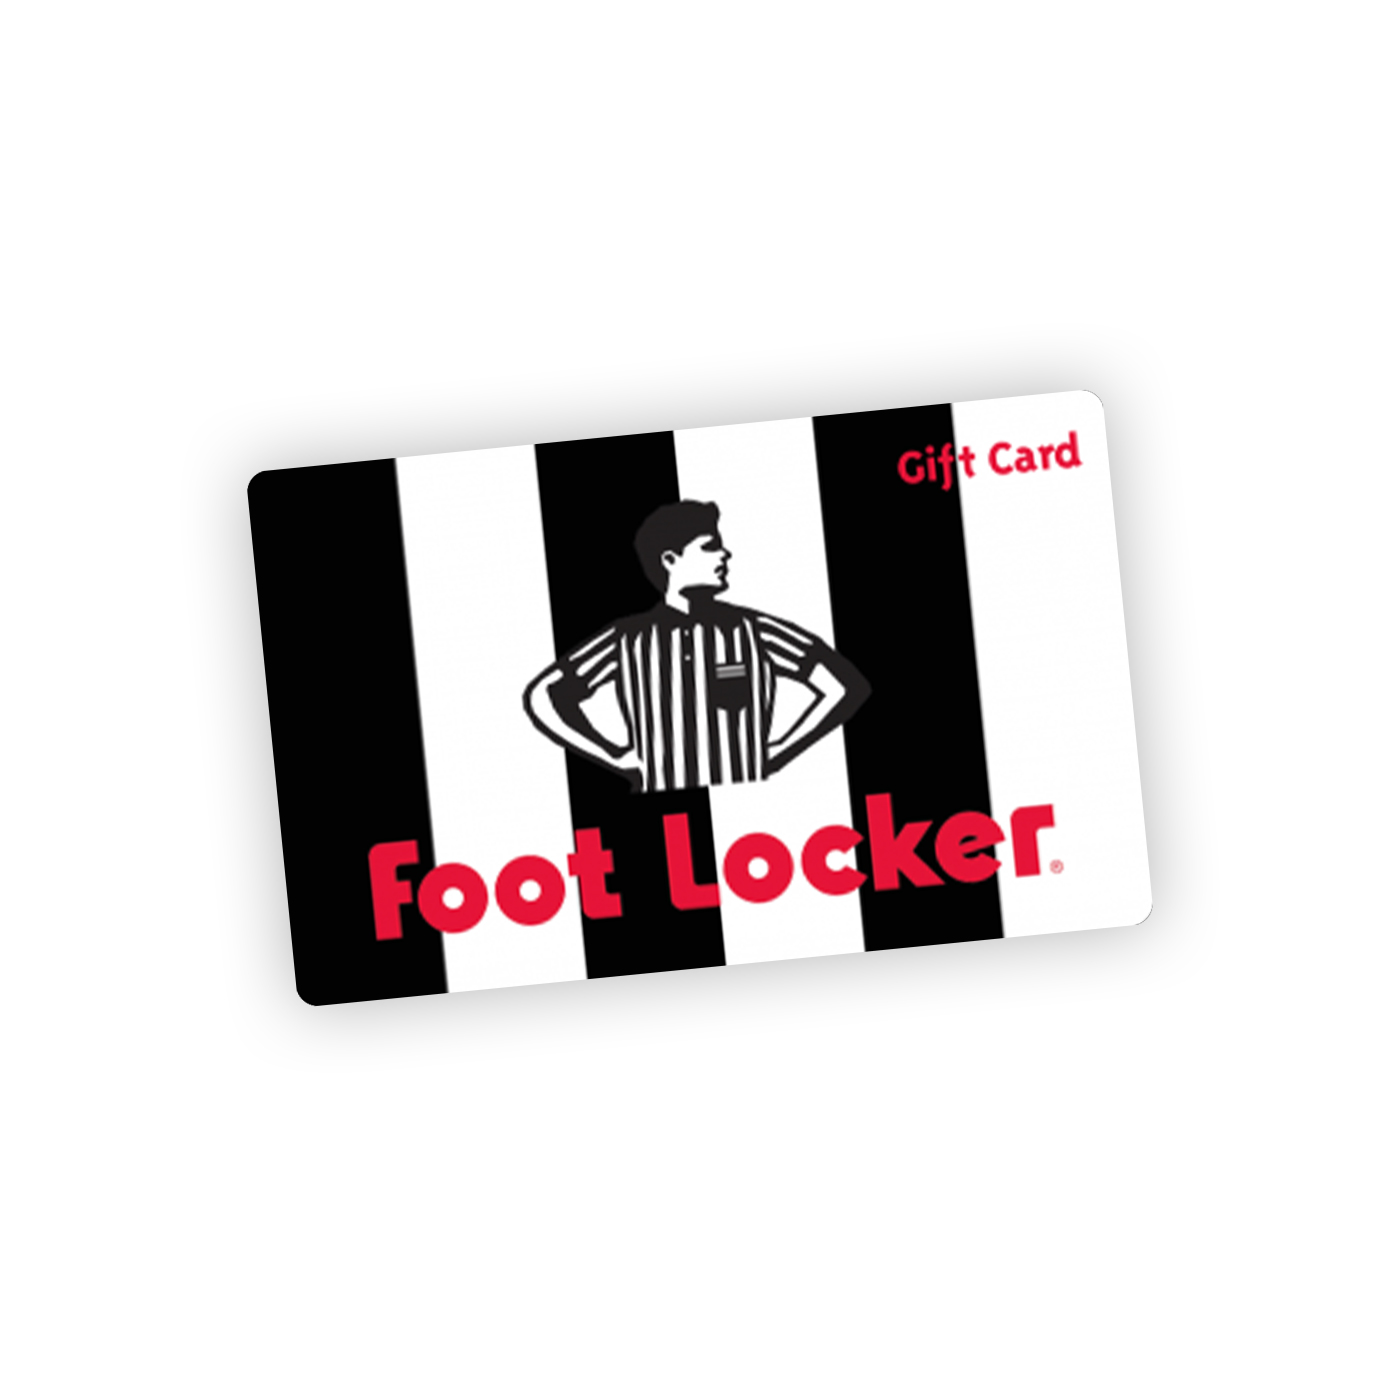 Gift Card Footlocker